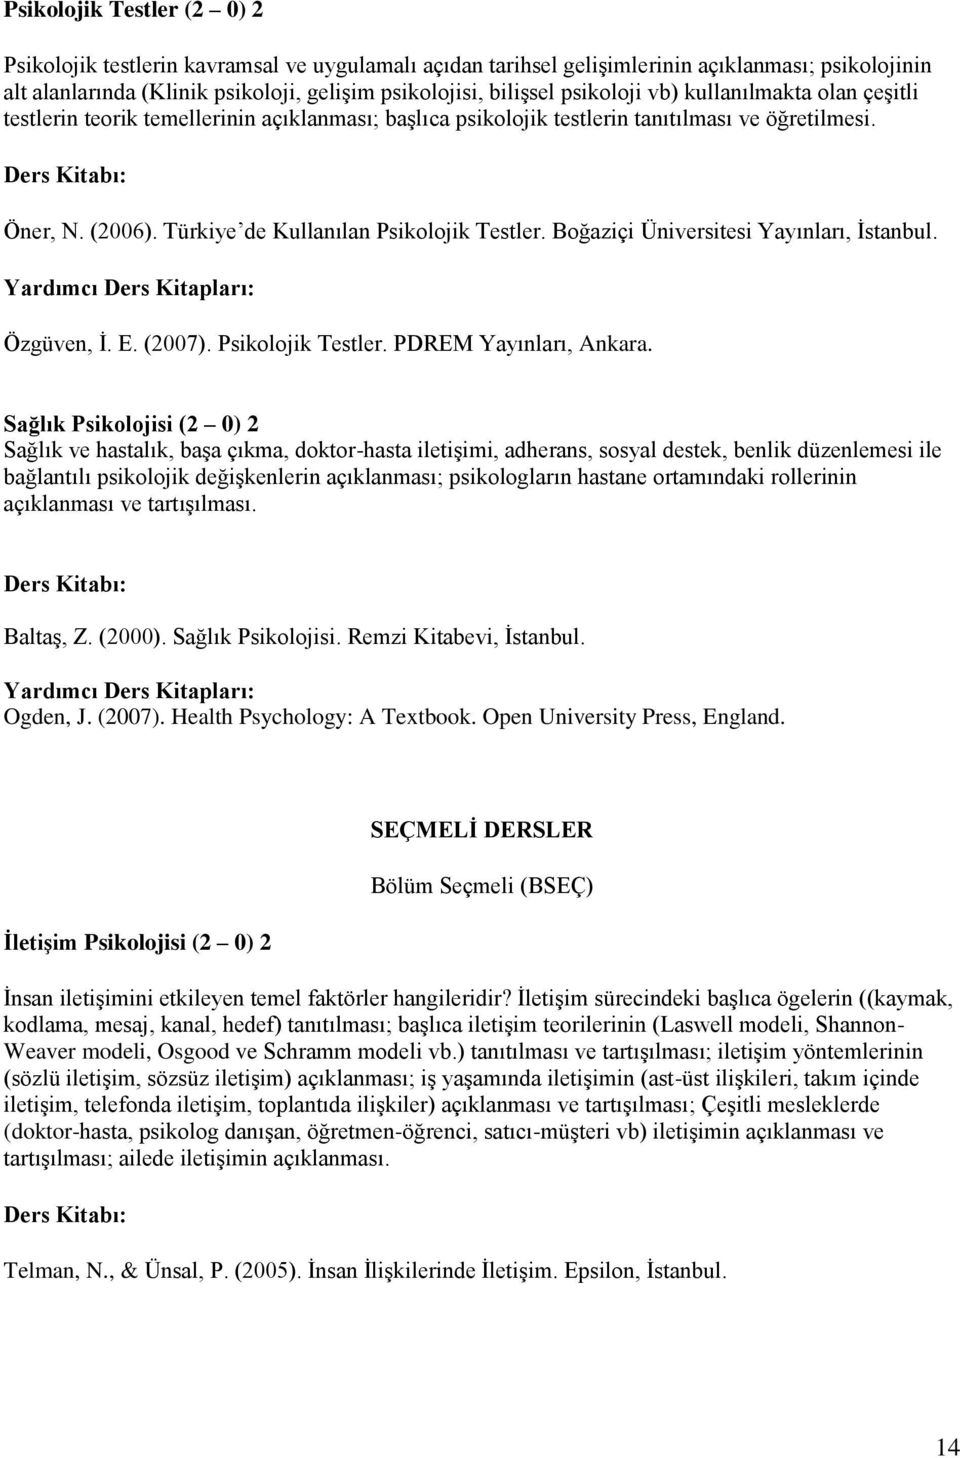 Boğaziçi Üniversitesi Yayınları, İstanbul. Özgüven, İ. E. (2007). Psikolojik Testler. PDREM Yayınları, Ankara.